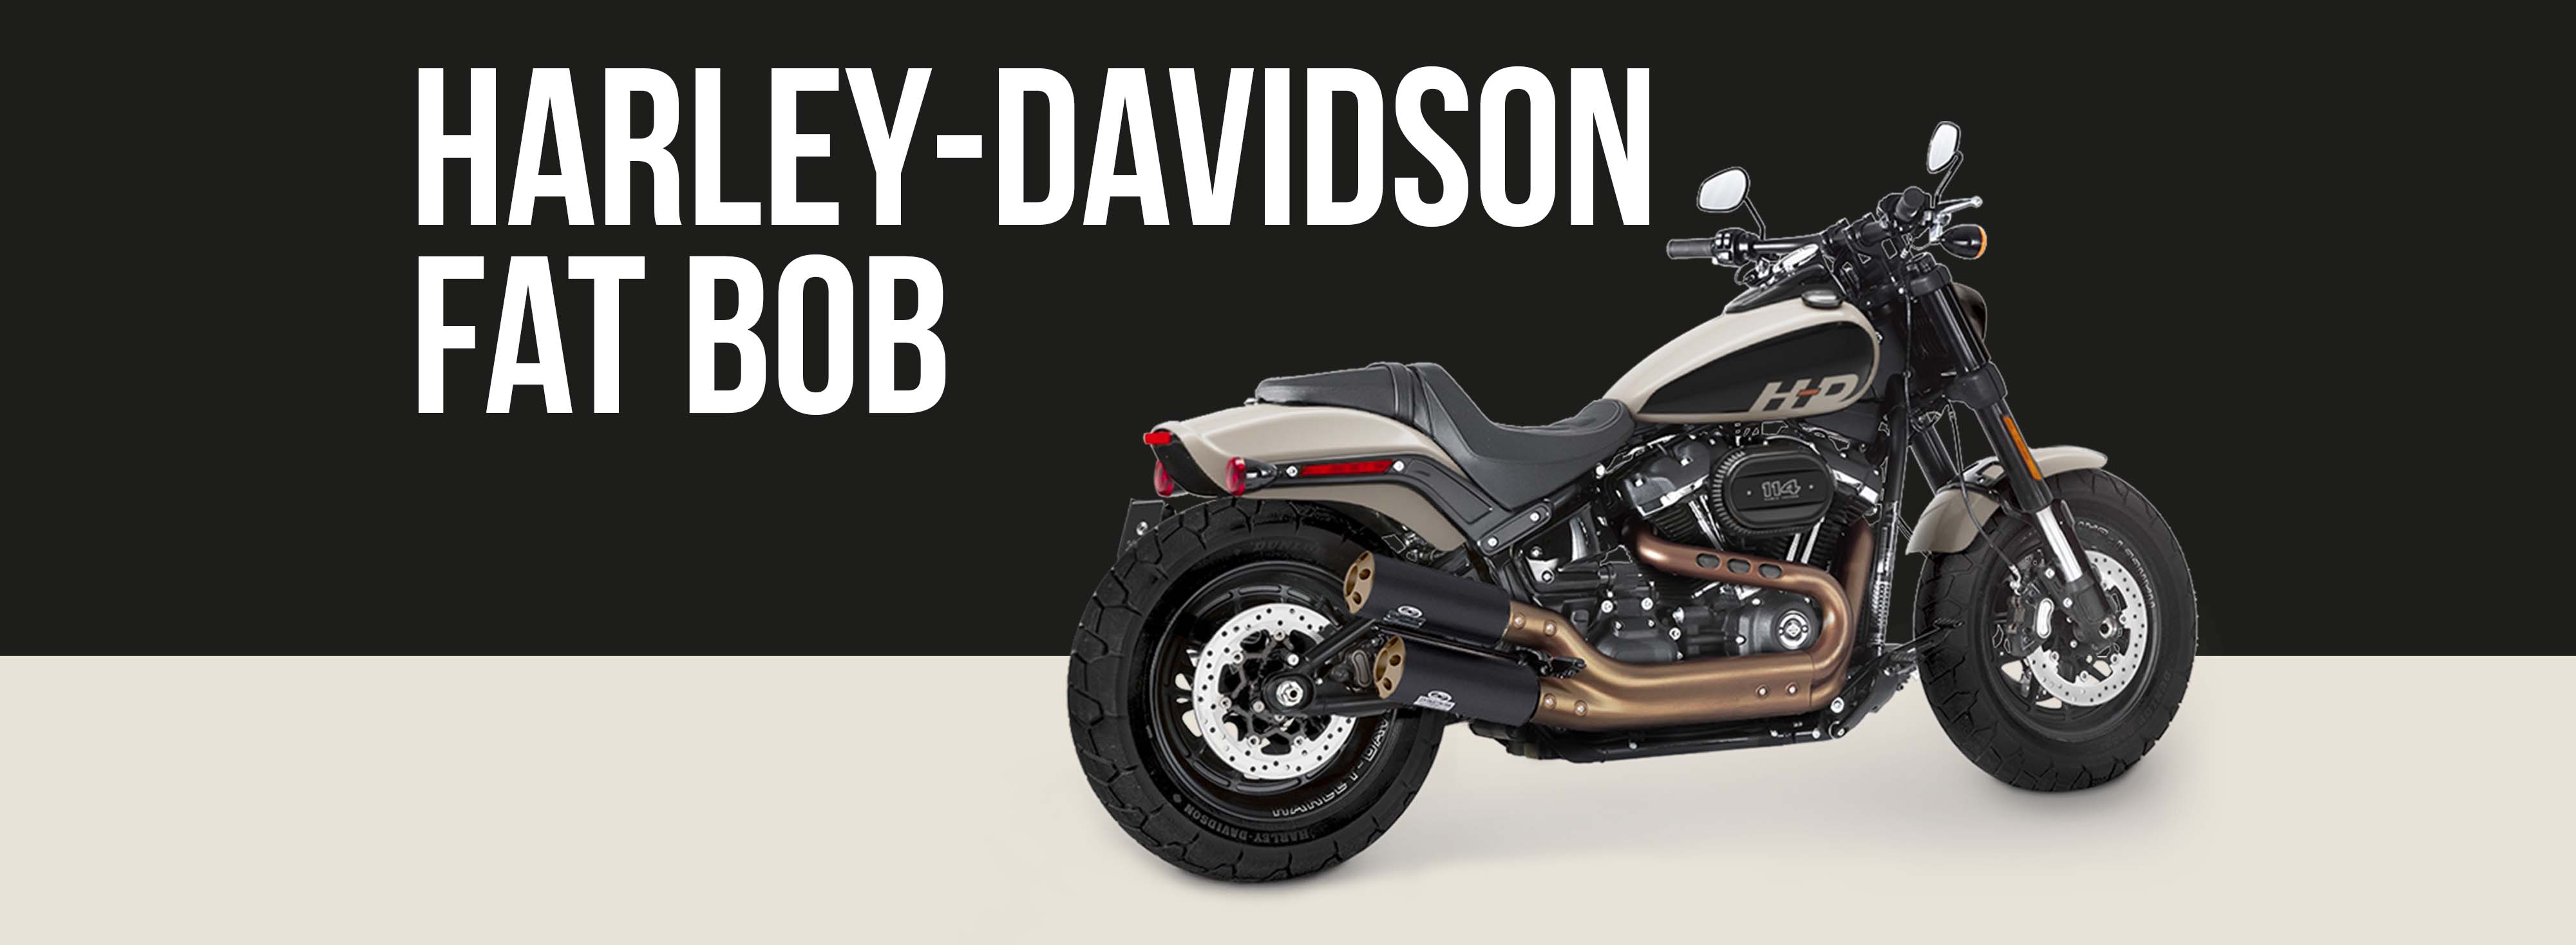 Harley-davidson Fat Bob Motorcycle Brand Page Header